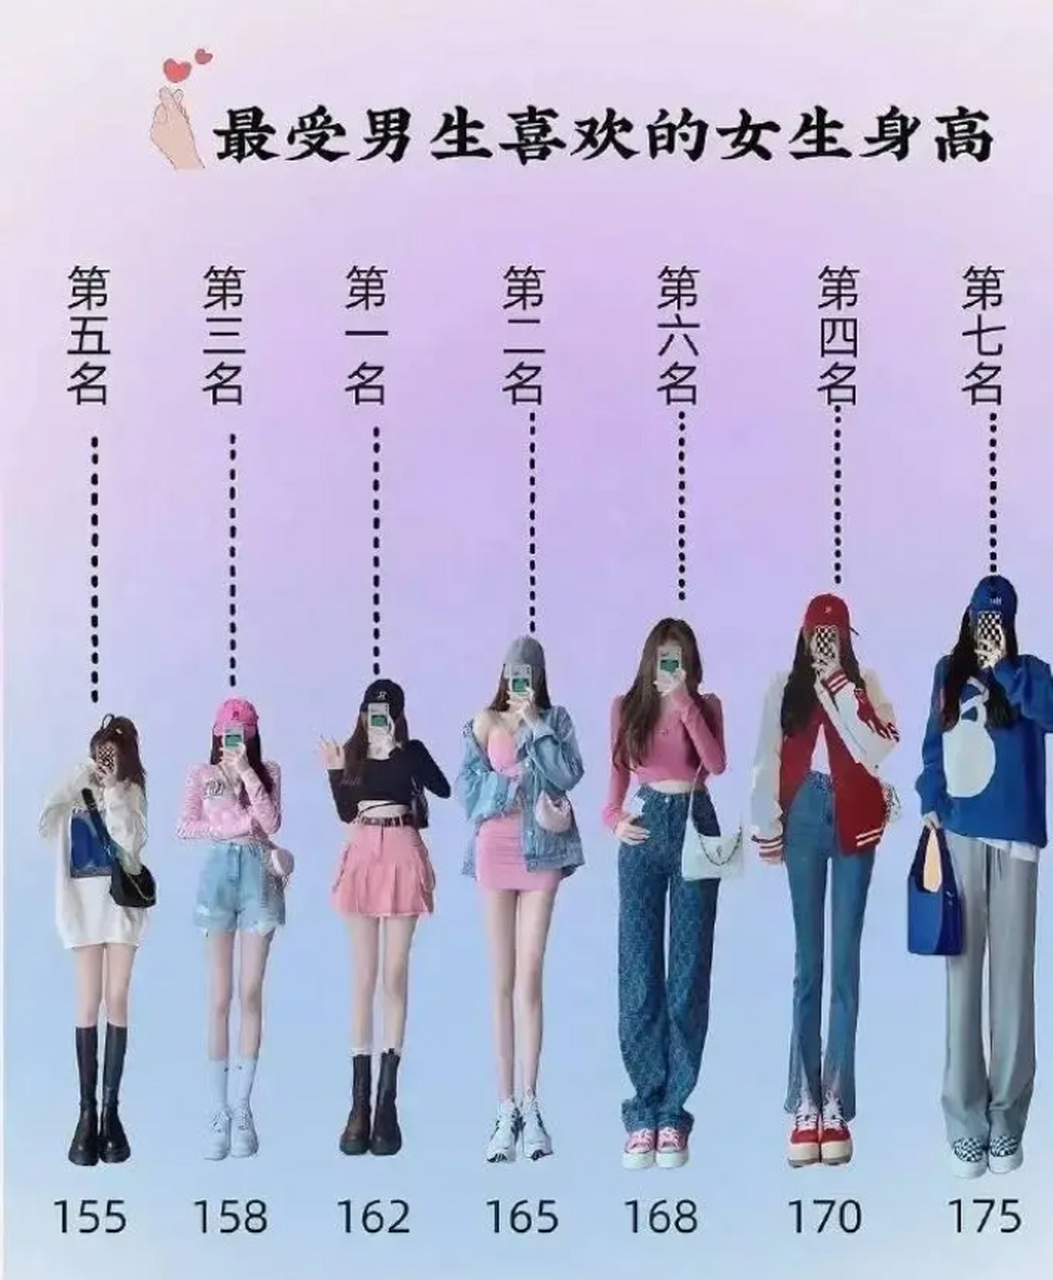 其中最受欢迎的男生身高是178cm,最受欢迎的女生身高是162cm